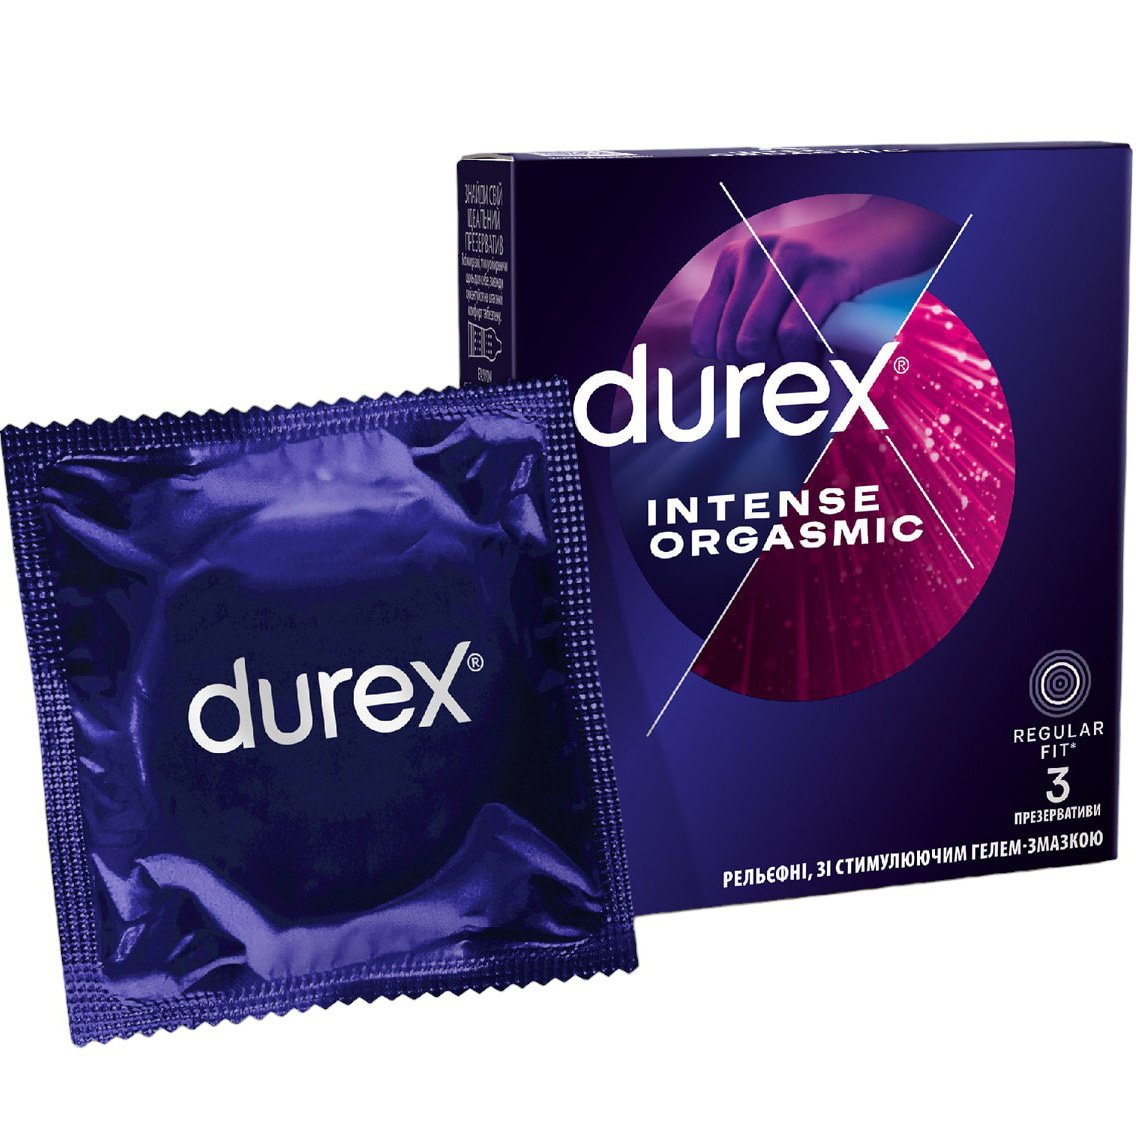 Презервативы латексные с силиконовой смазкой Durex Intense Orgasmic, рельефные, со стимулирующим гелем-смазкой, 3 шт. (3044084) - фото 1